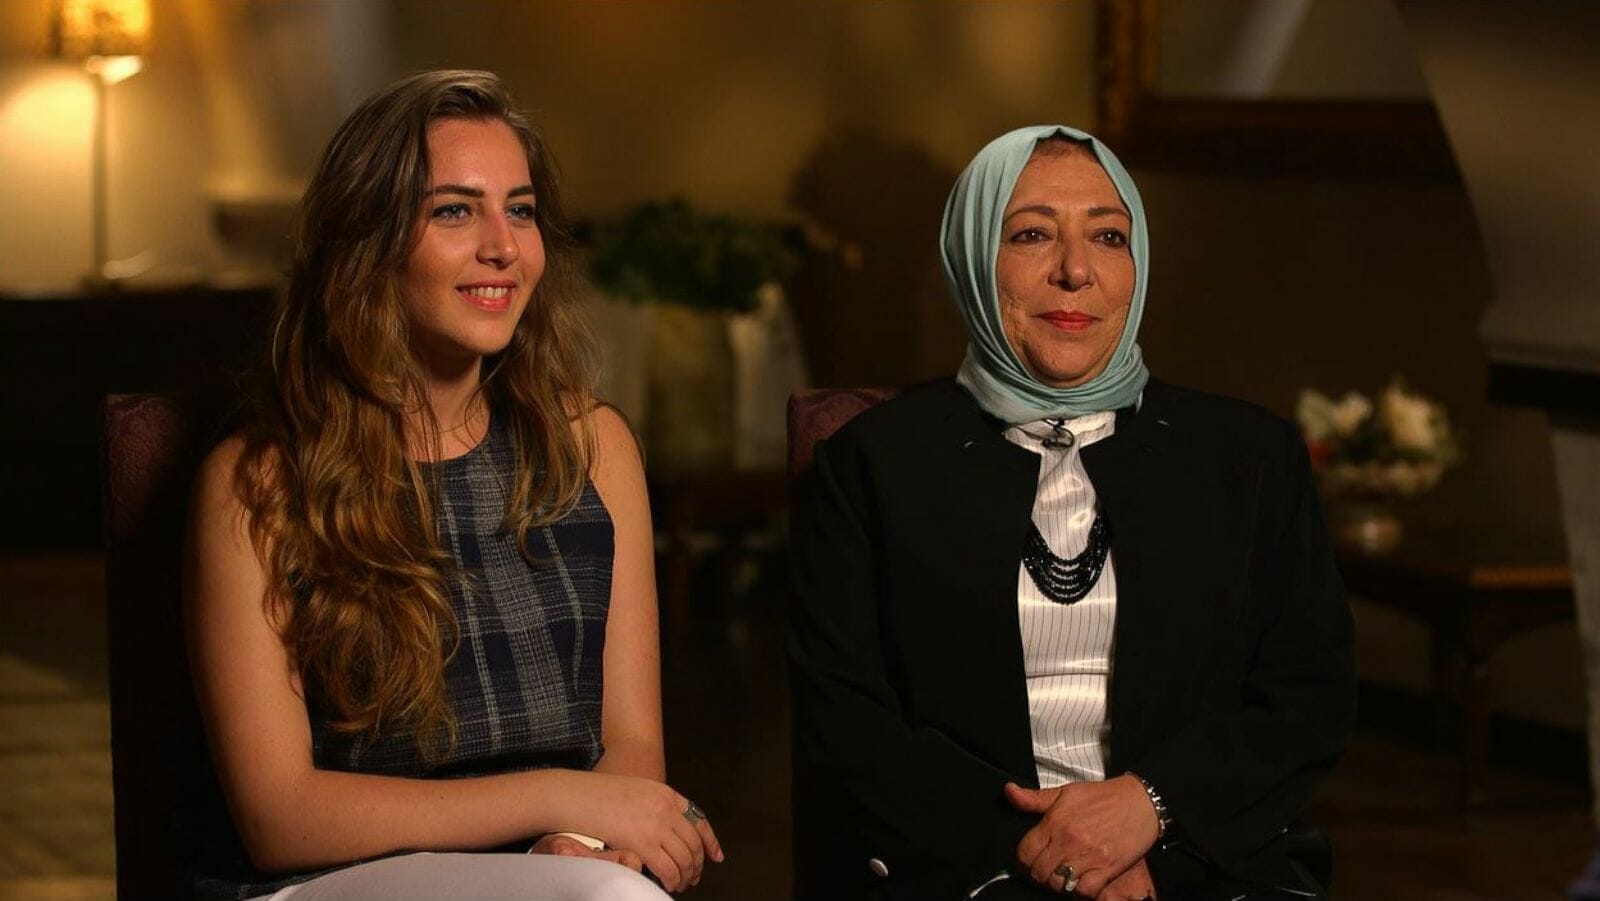  القضاء التركي يصدر الحكم النهائي بحق قاتل الناشطة السورية عروبة بركات وابنتها حلا